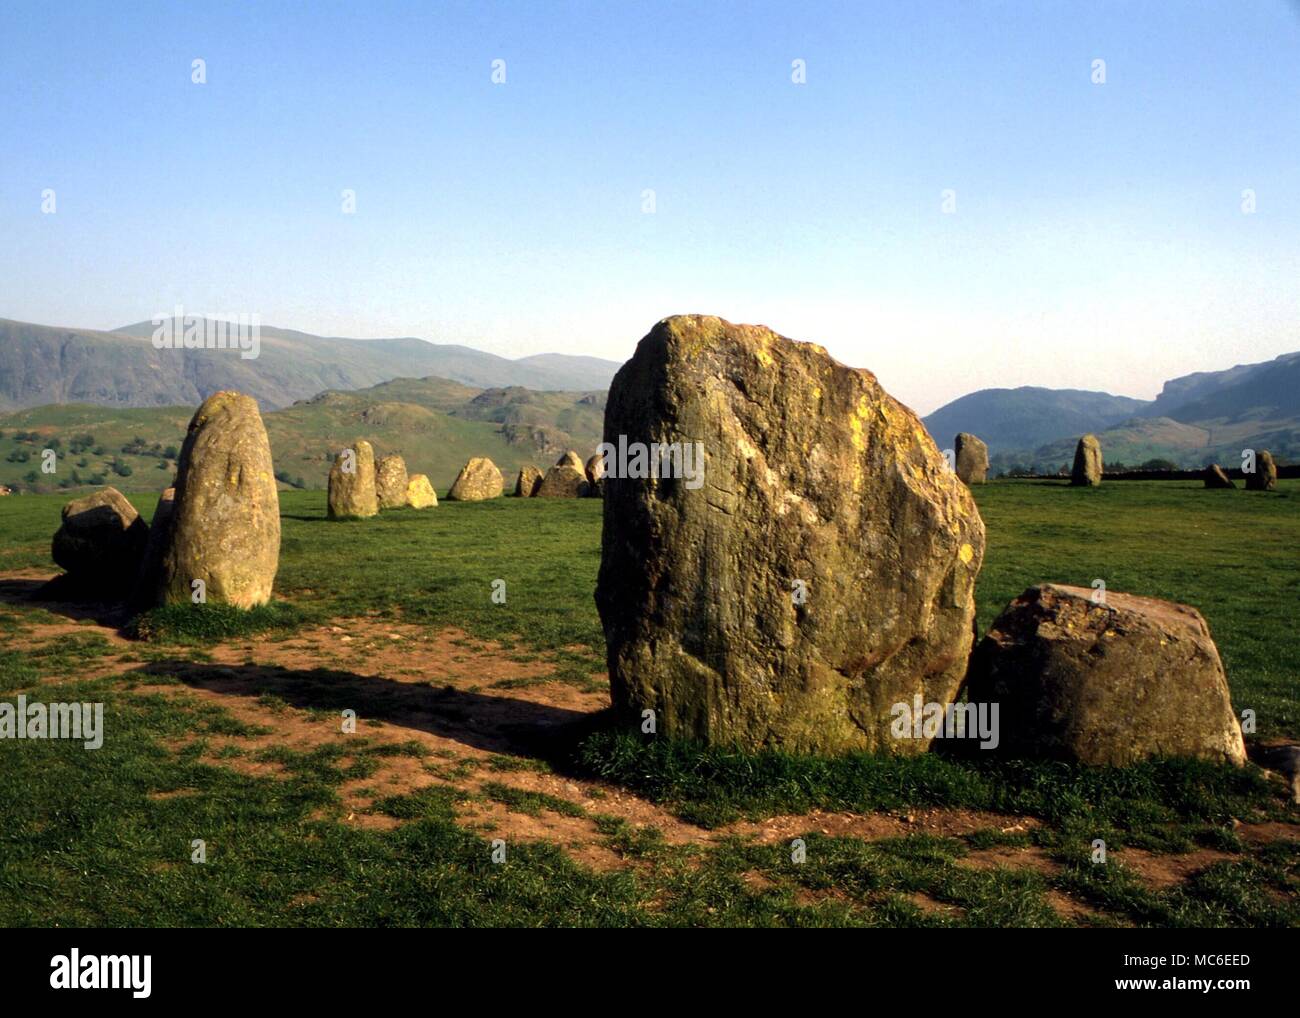 Steinkreise - Castlerigg 'Carles' von Castlerigg Kreis in der Nähe von Keswick in Cumbria, besteht aus 38 senkrecht stehenden Steinen in einem maximalen Durchmesser von 107 Fuß, mit 10 - Stone Circle im Außenring. Wahrscheinlich C. 2500 v. Chr. Stockfoto